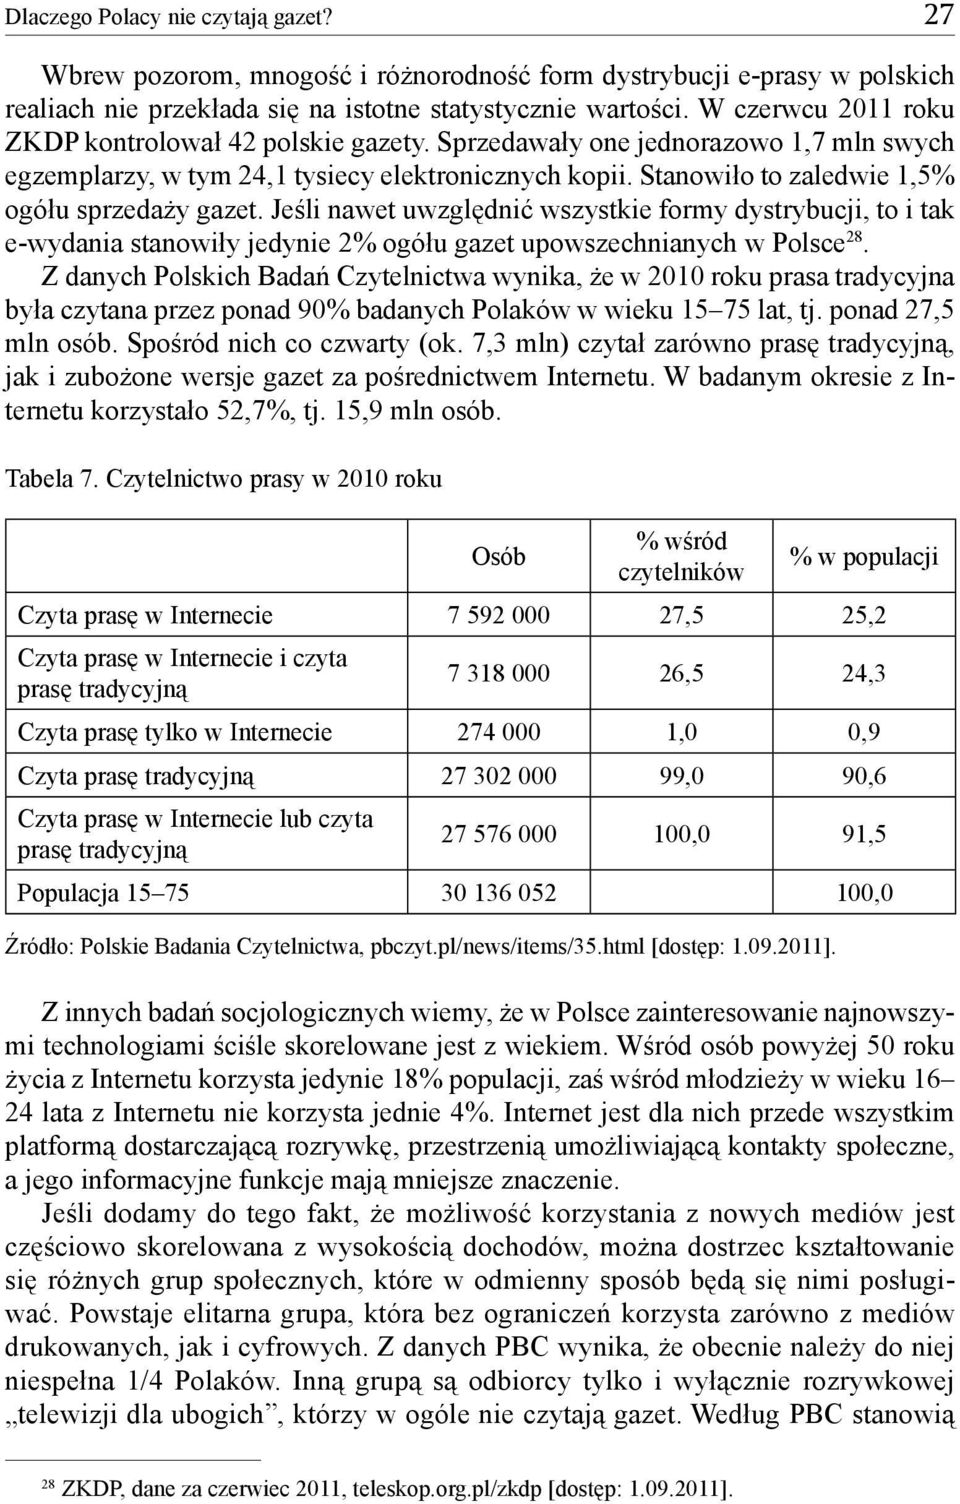 Stanowiło to zaledwie 1,5% ogółu sprzedaży gazet. Jeśli nawet uwzględnić wszystkie formy dystrybucji, to i tak e-wydania stanowiły jedynie 2% ogółu gazet upowszechnianych w Polsce 28.